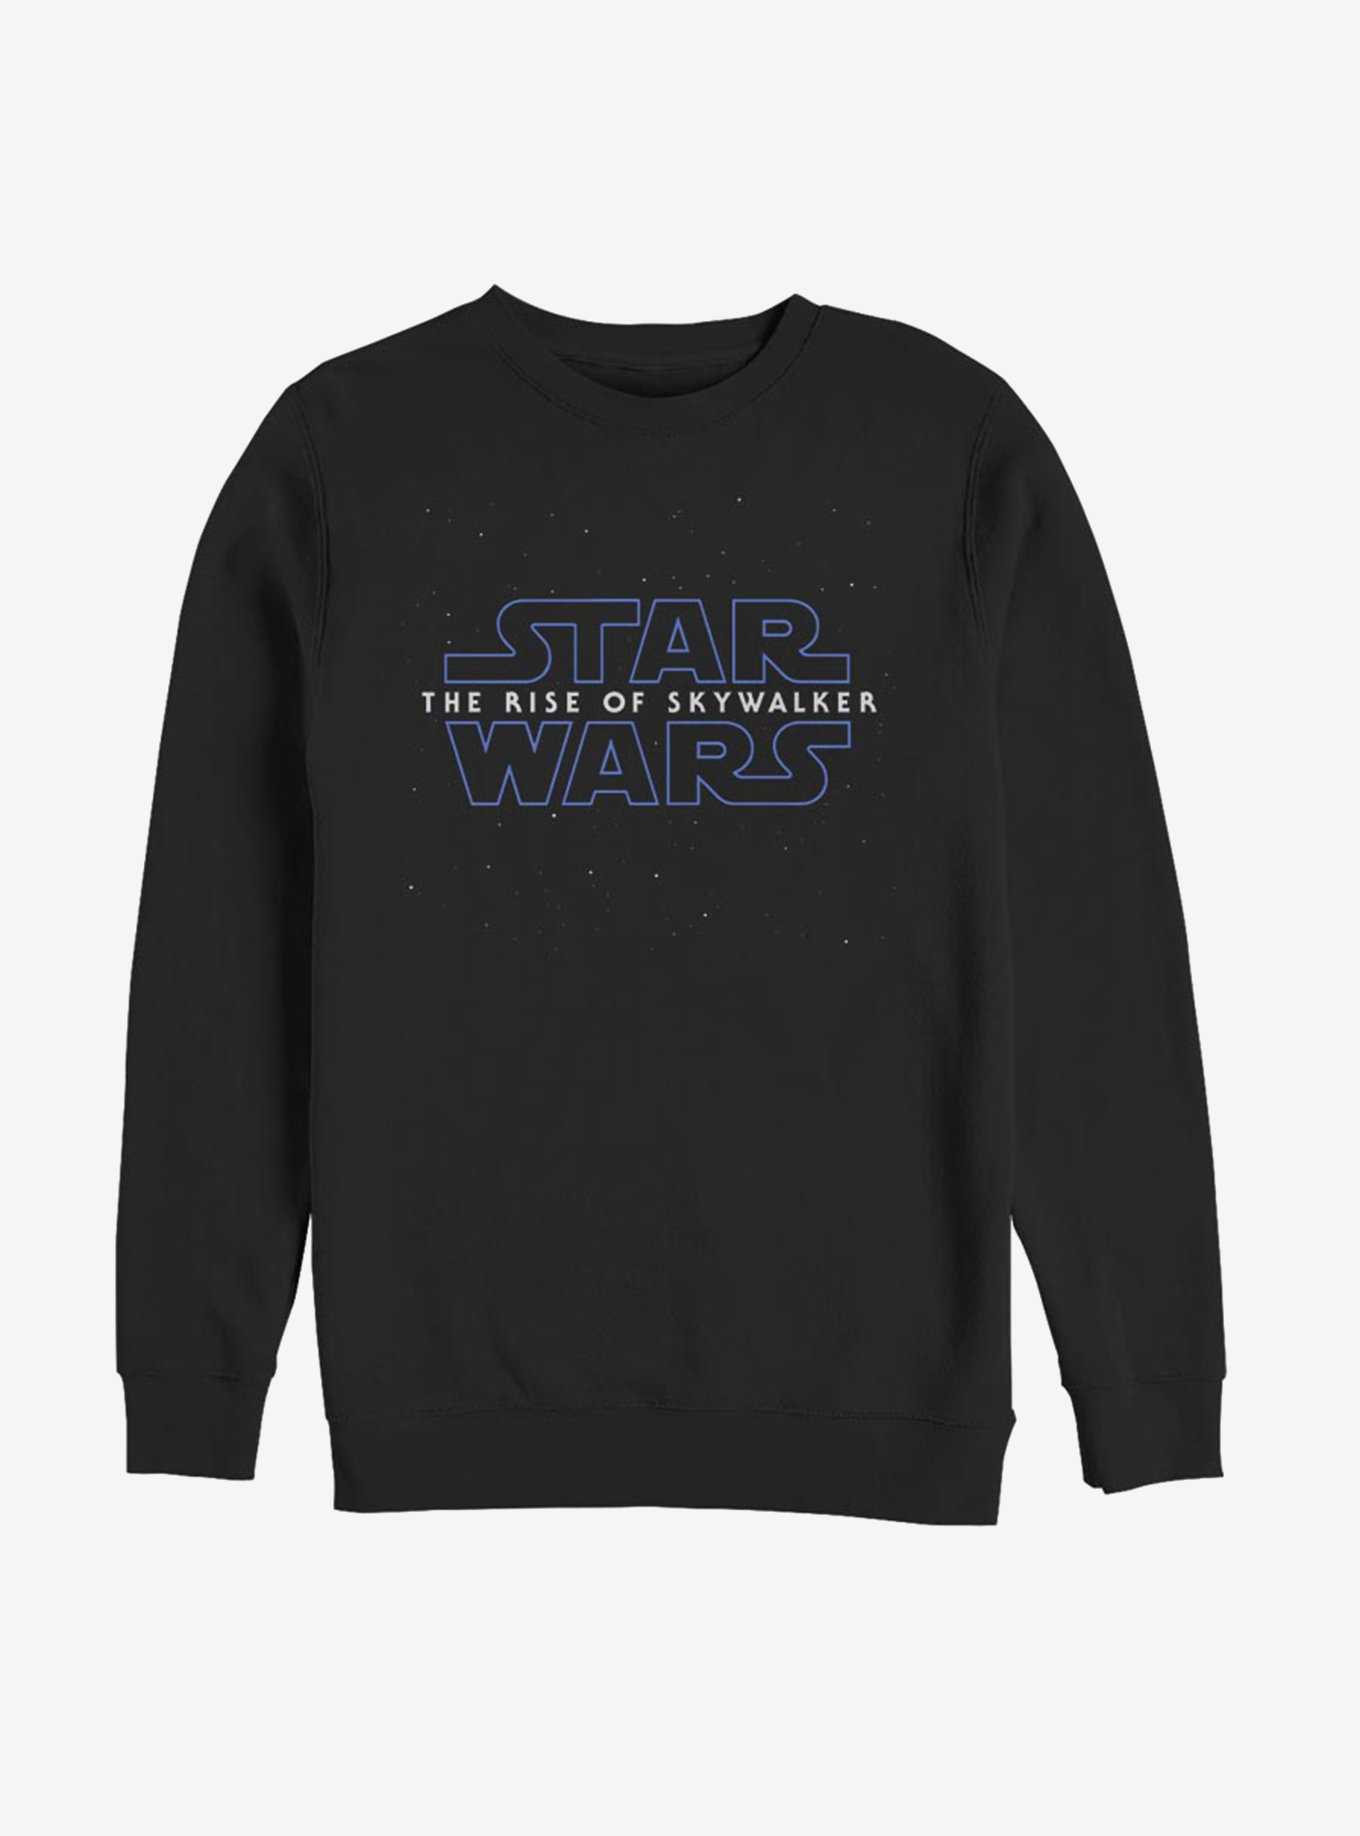 Star Wars: The Rise of Skywalker Stars Sweatshirt, , hi-res